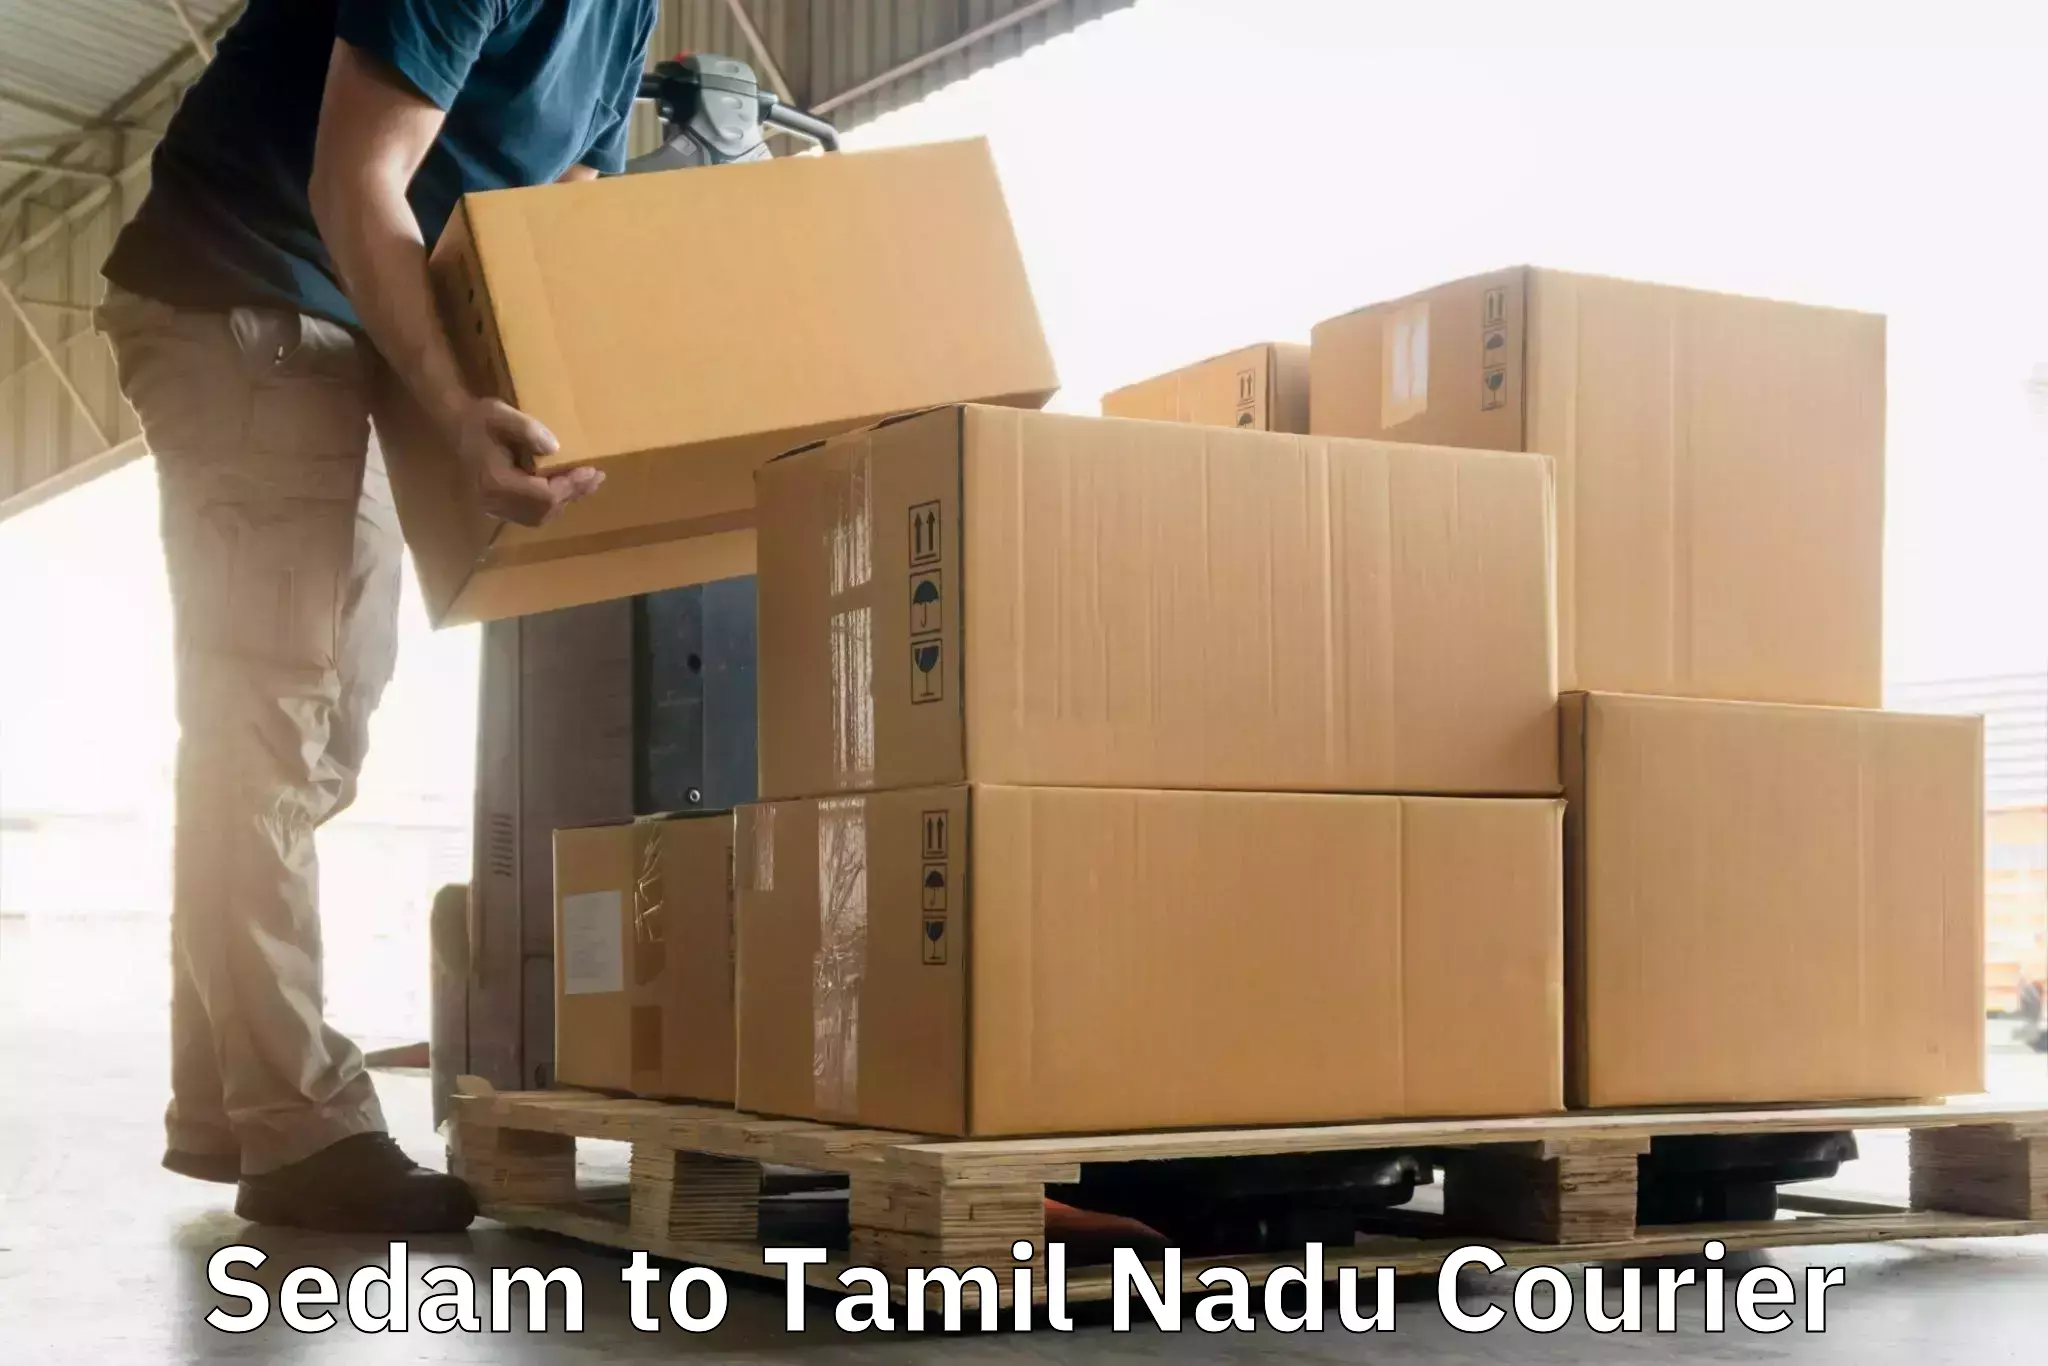 24-hour courier service Sedam to Avinashi